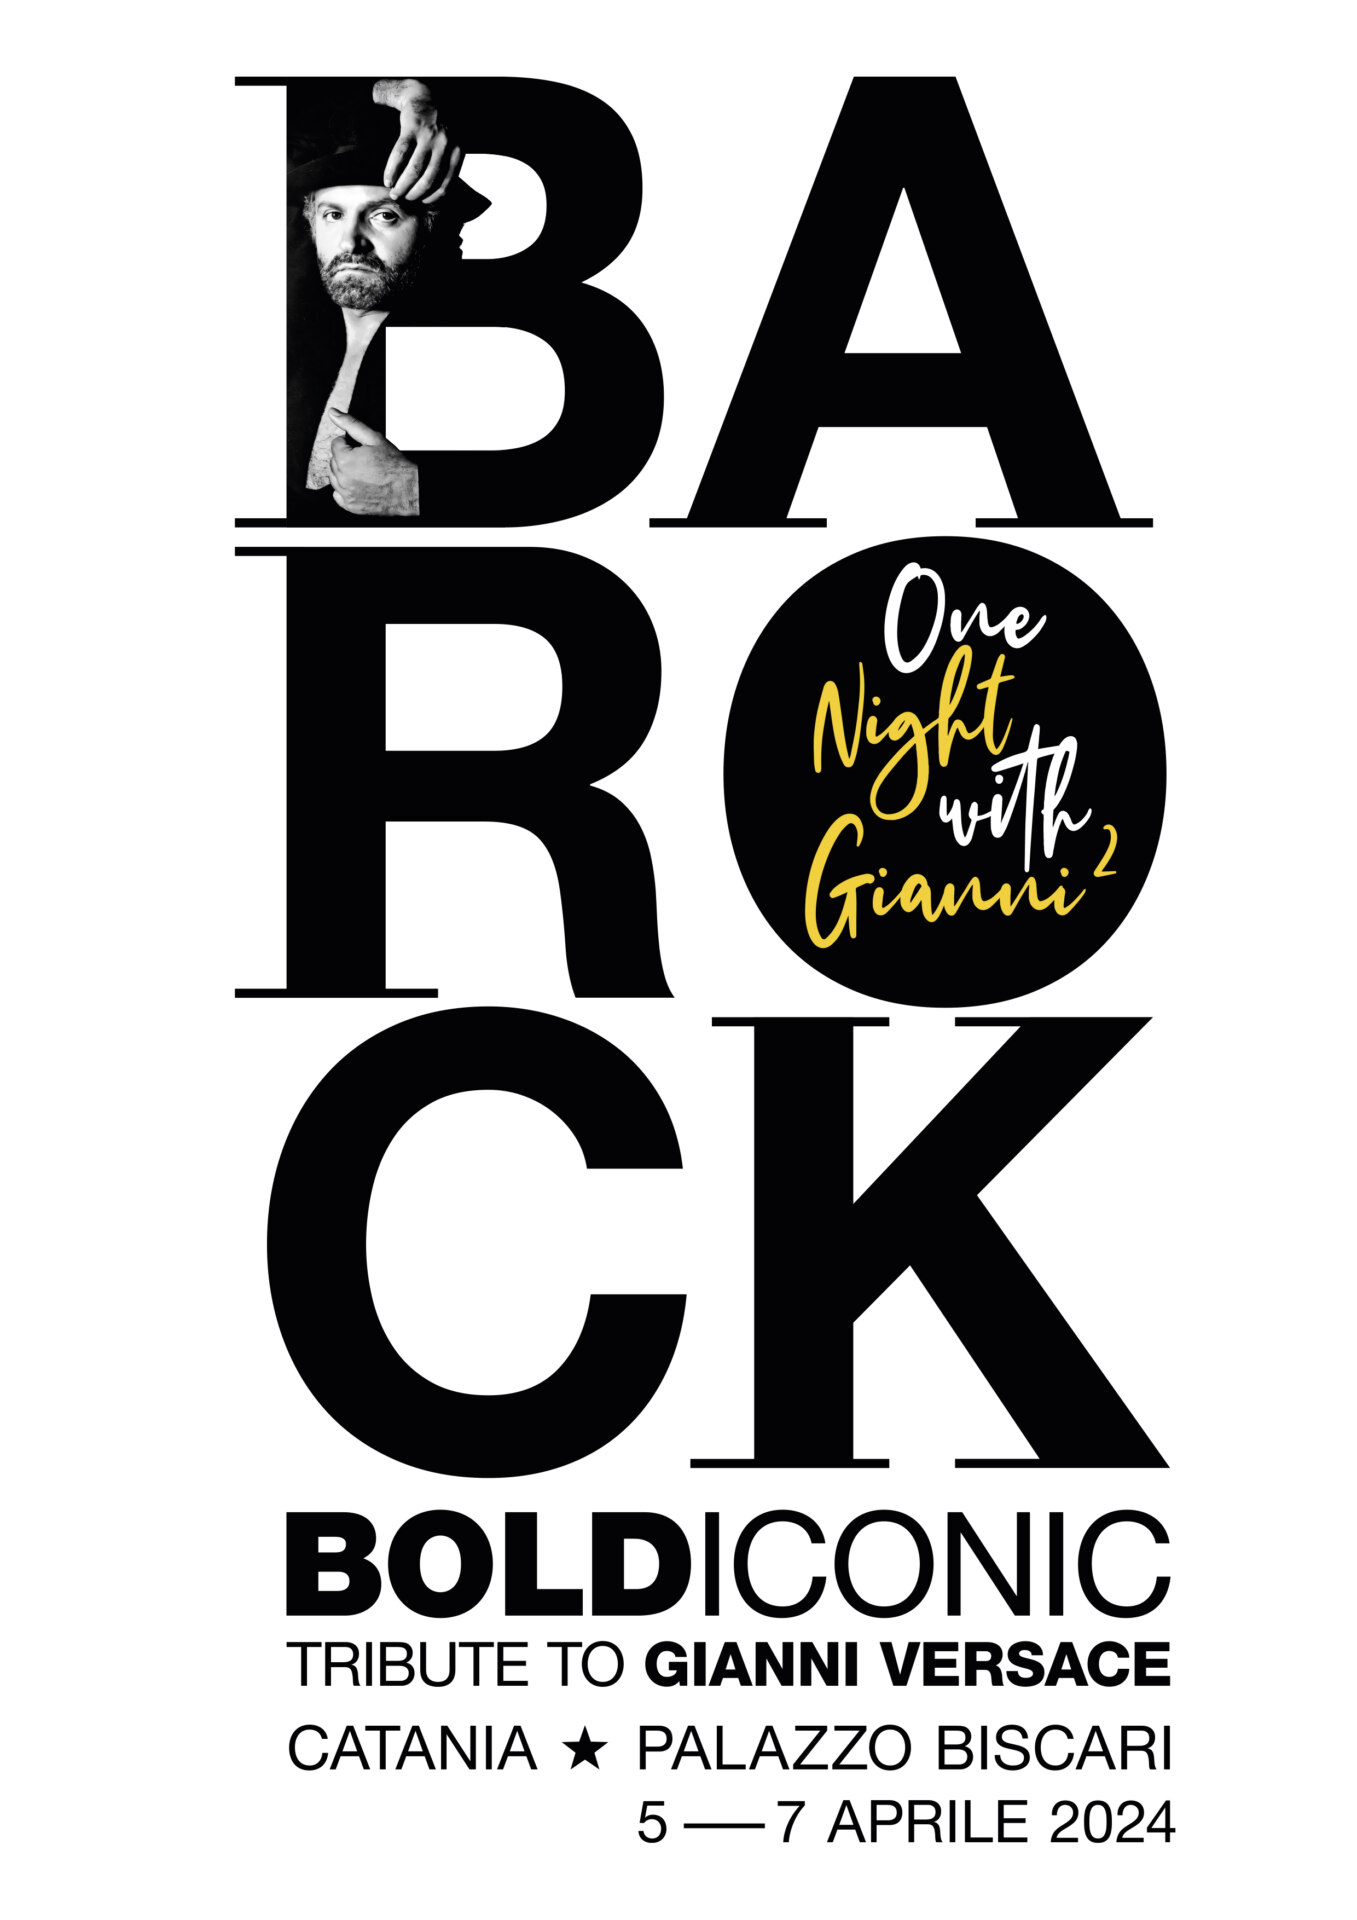 BAROCK Bold Iconic Tribute to Gianni Versace, Palazzo Biscari, Catania